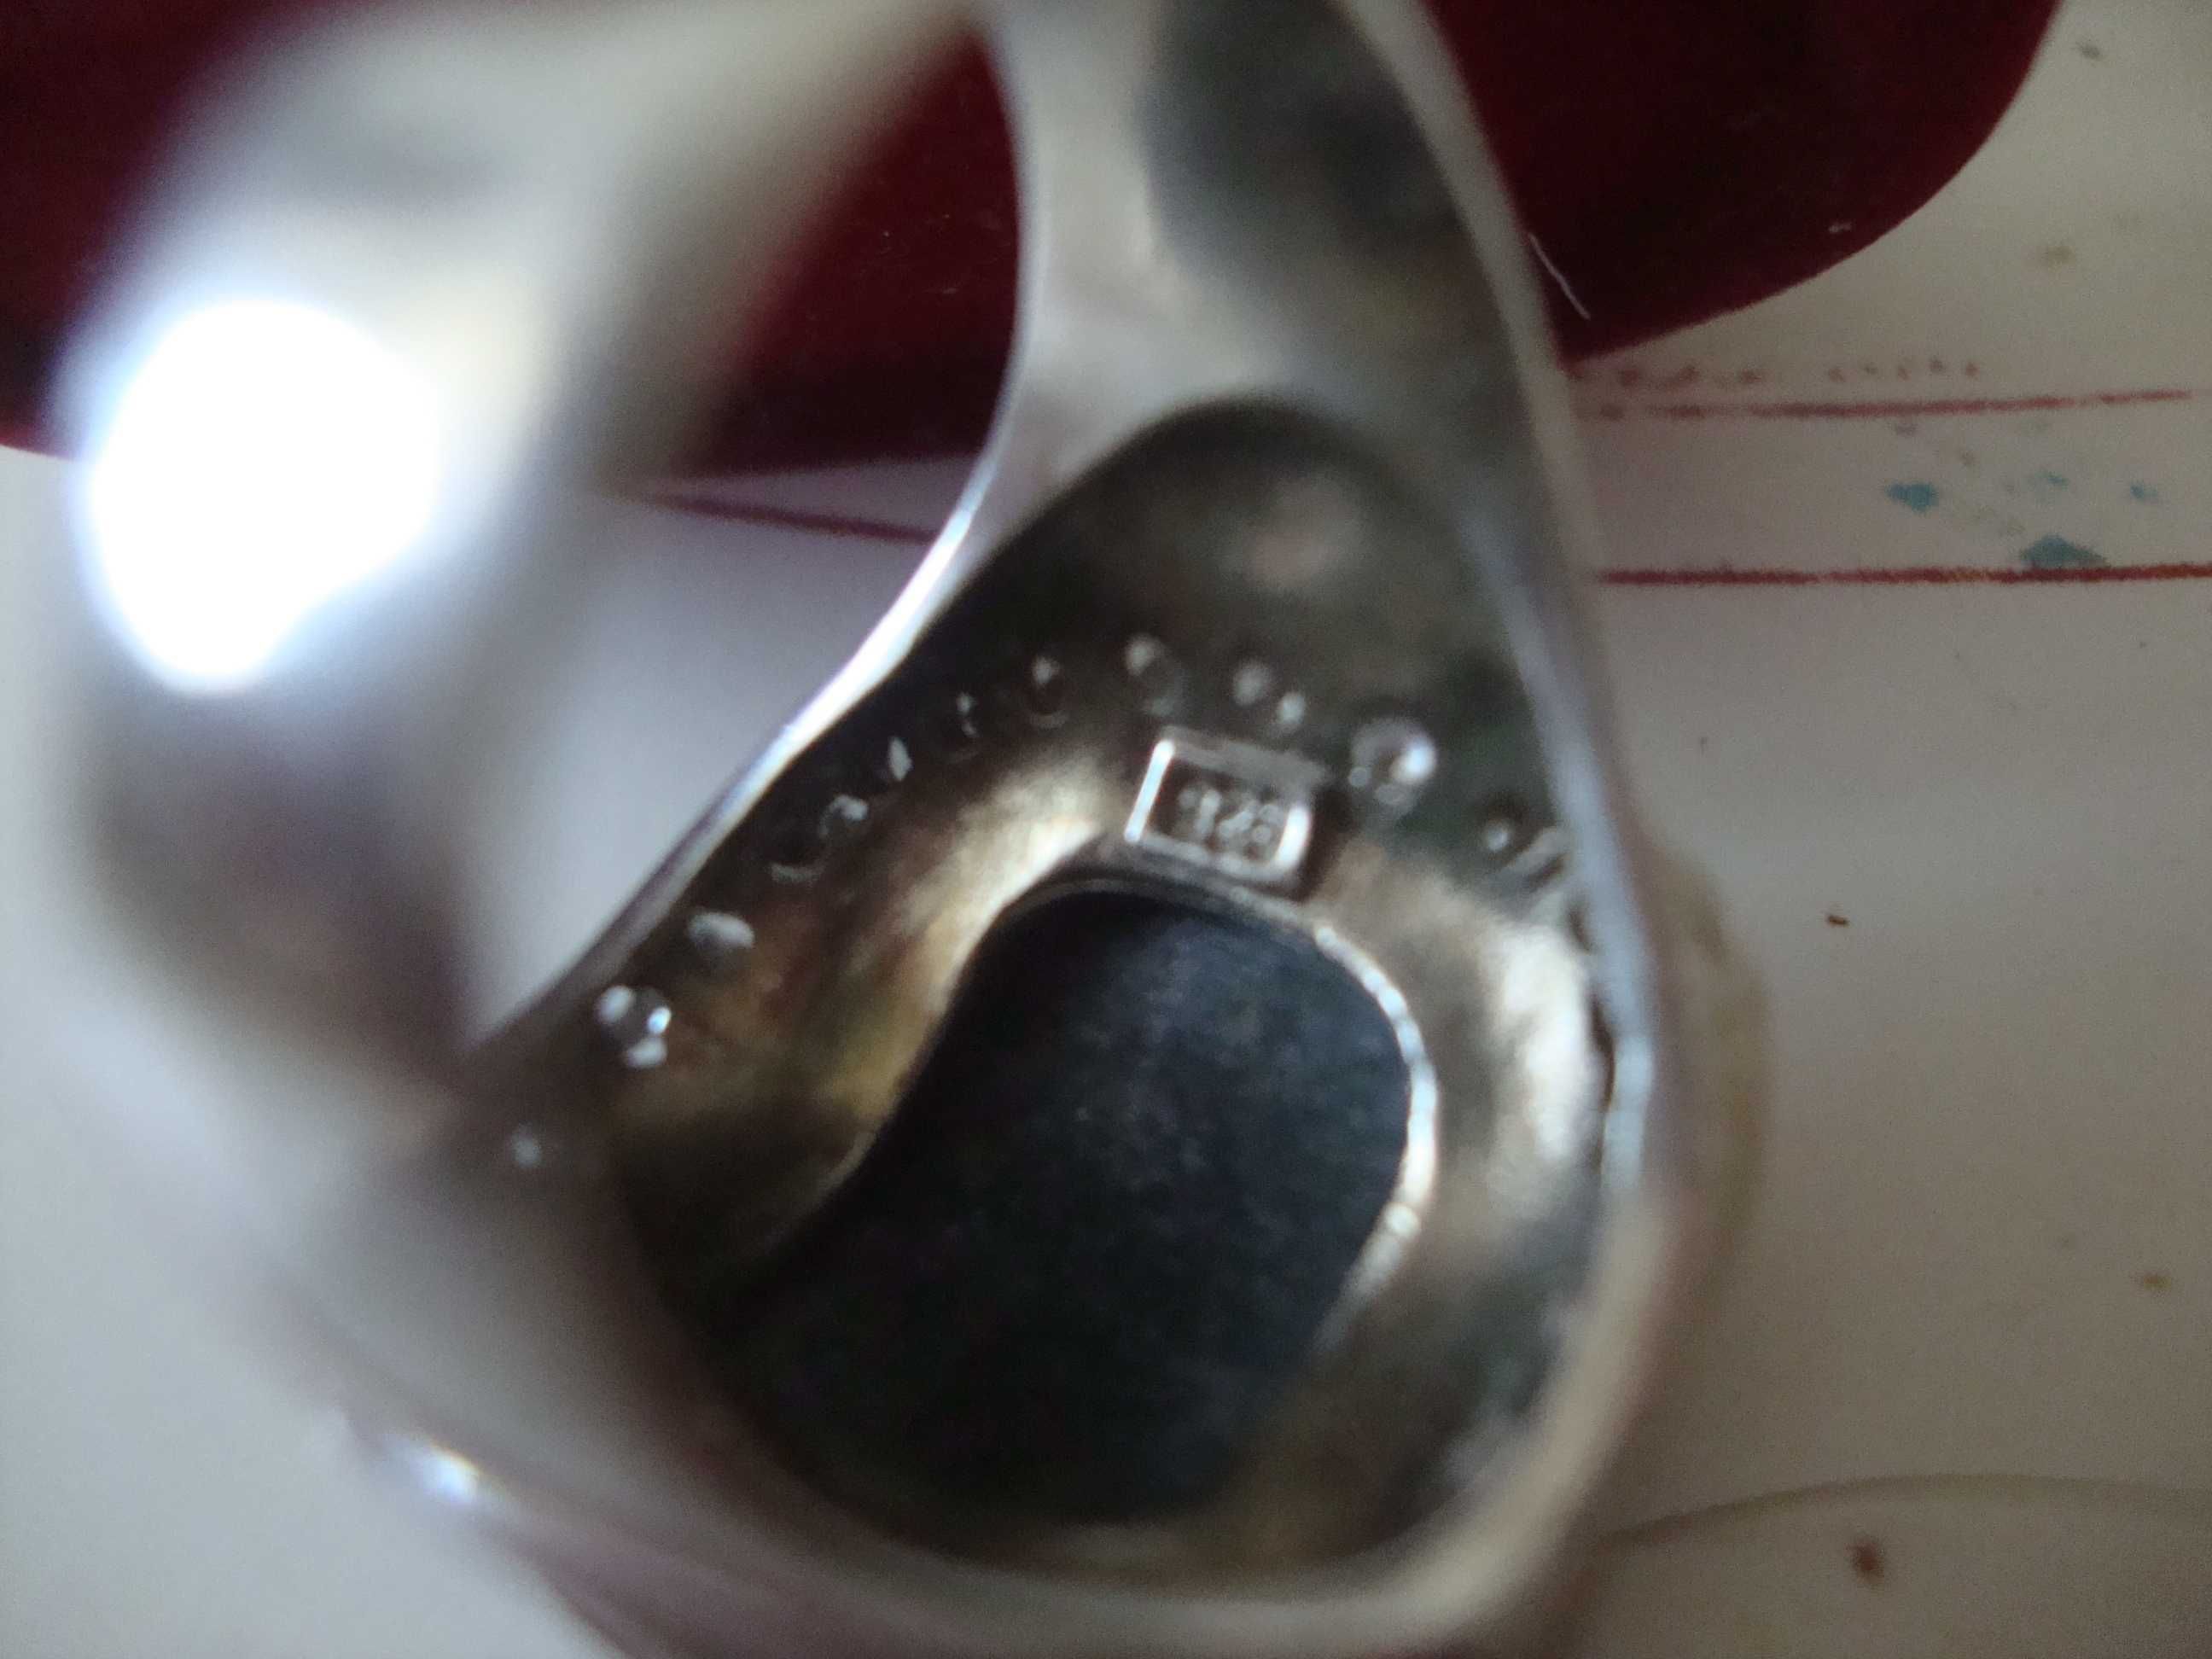 Кольцо-перстень серебро с раухтопазом